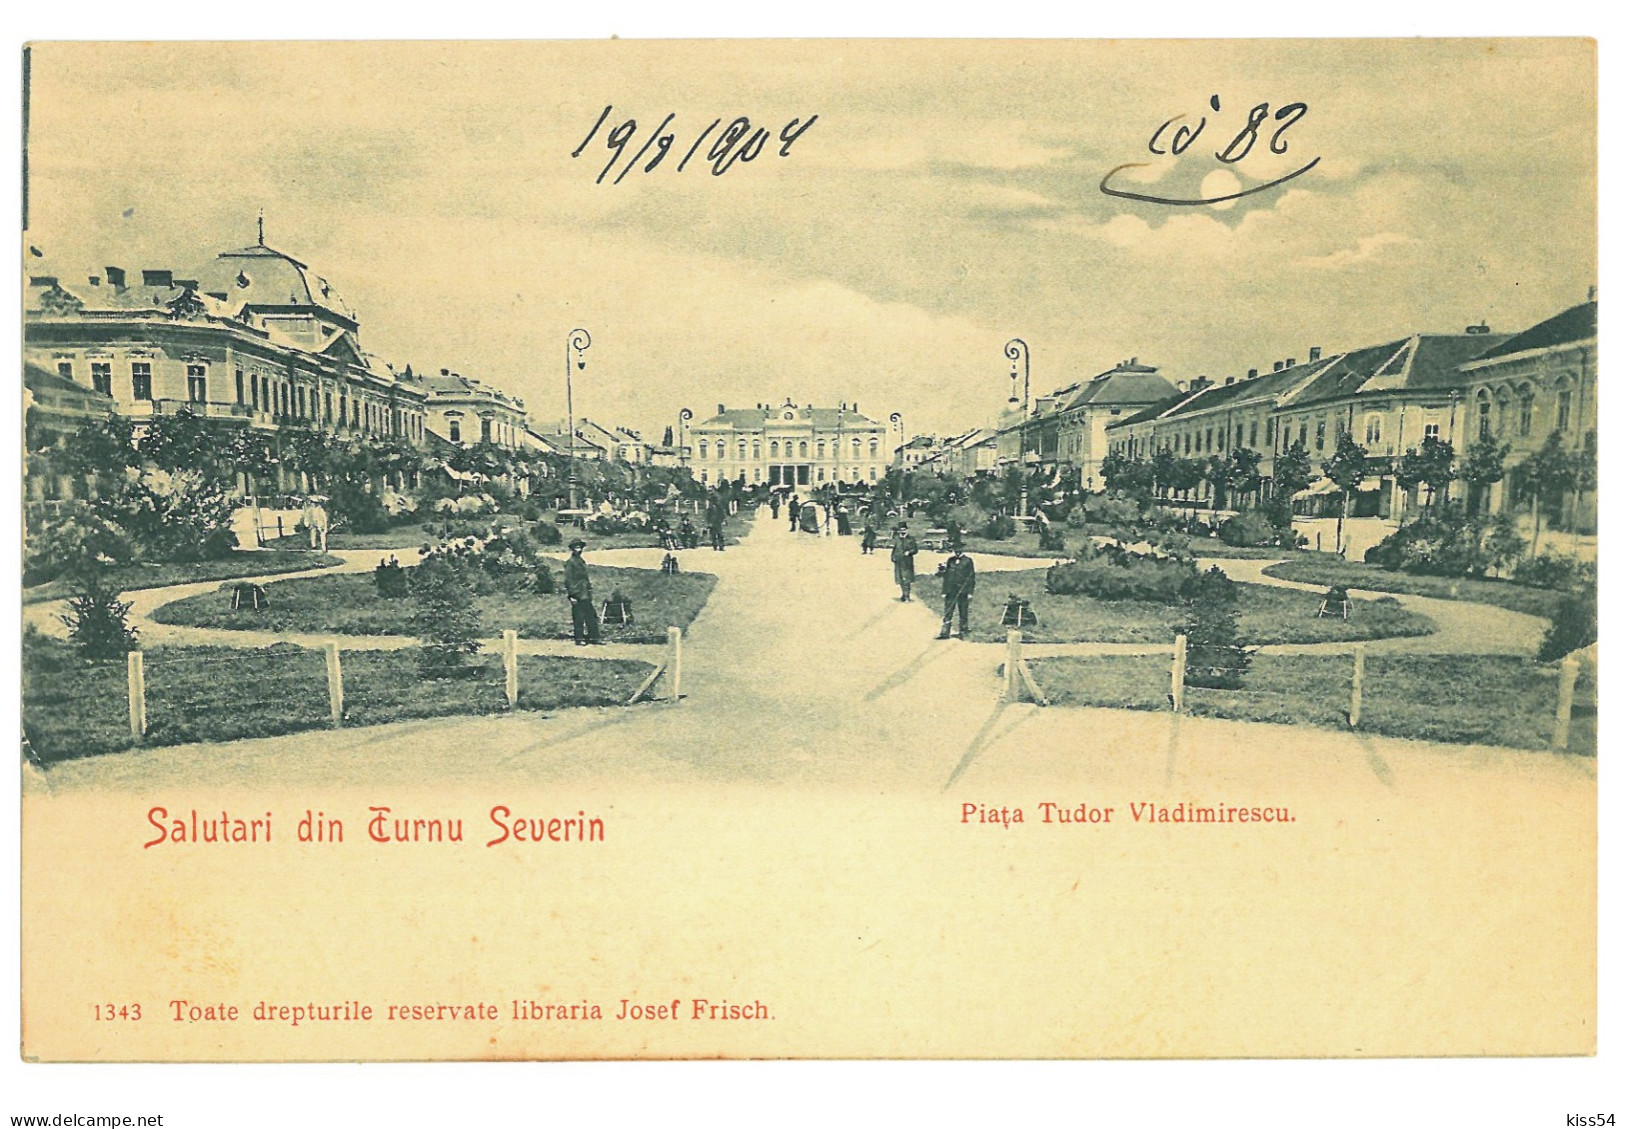 RO 999 - 24022 TURNU-SEVERIN, Market, Park, Litho, Romania - Old Postcard - Unused - Rumänien